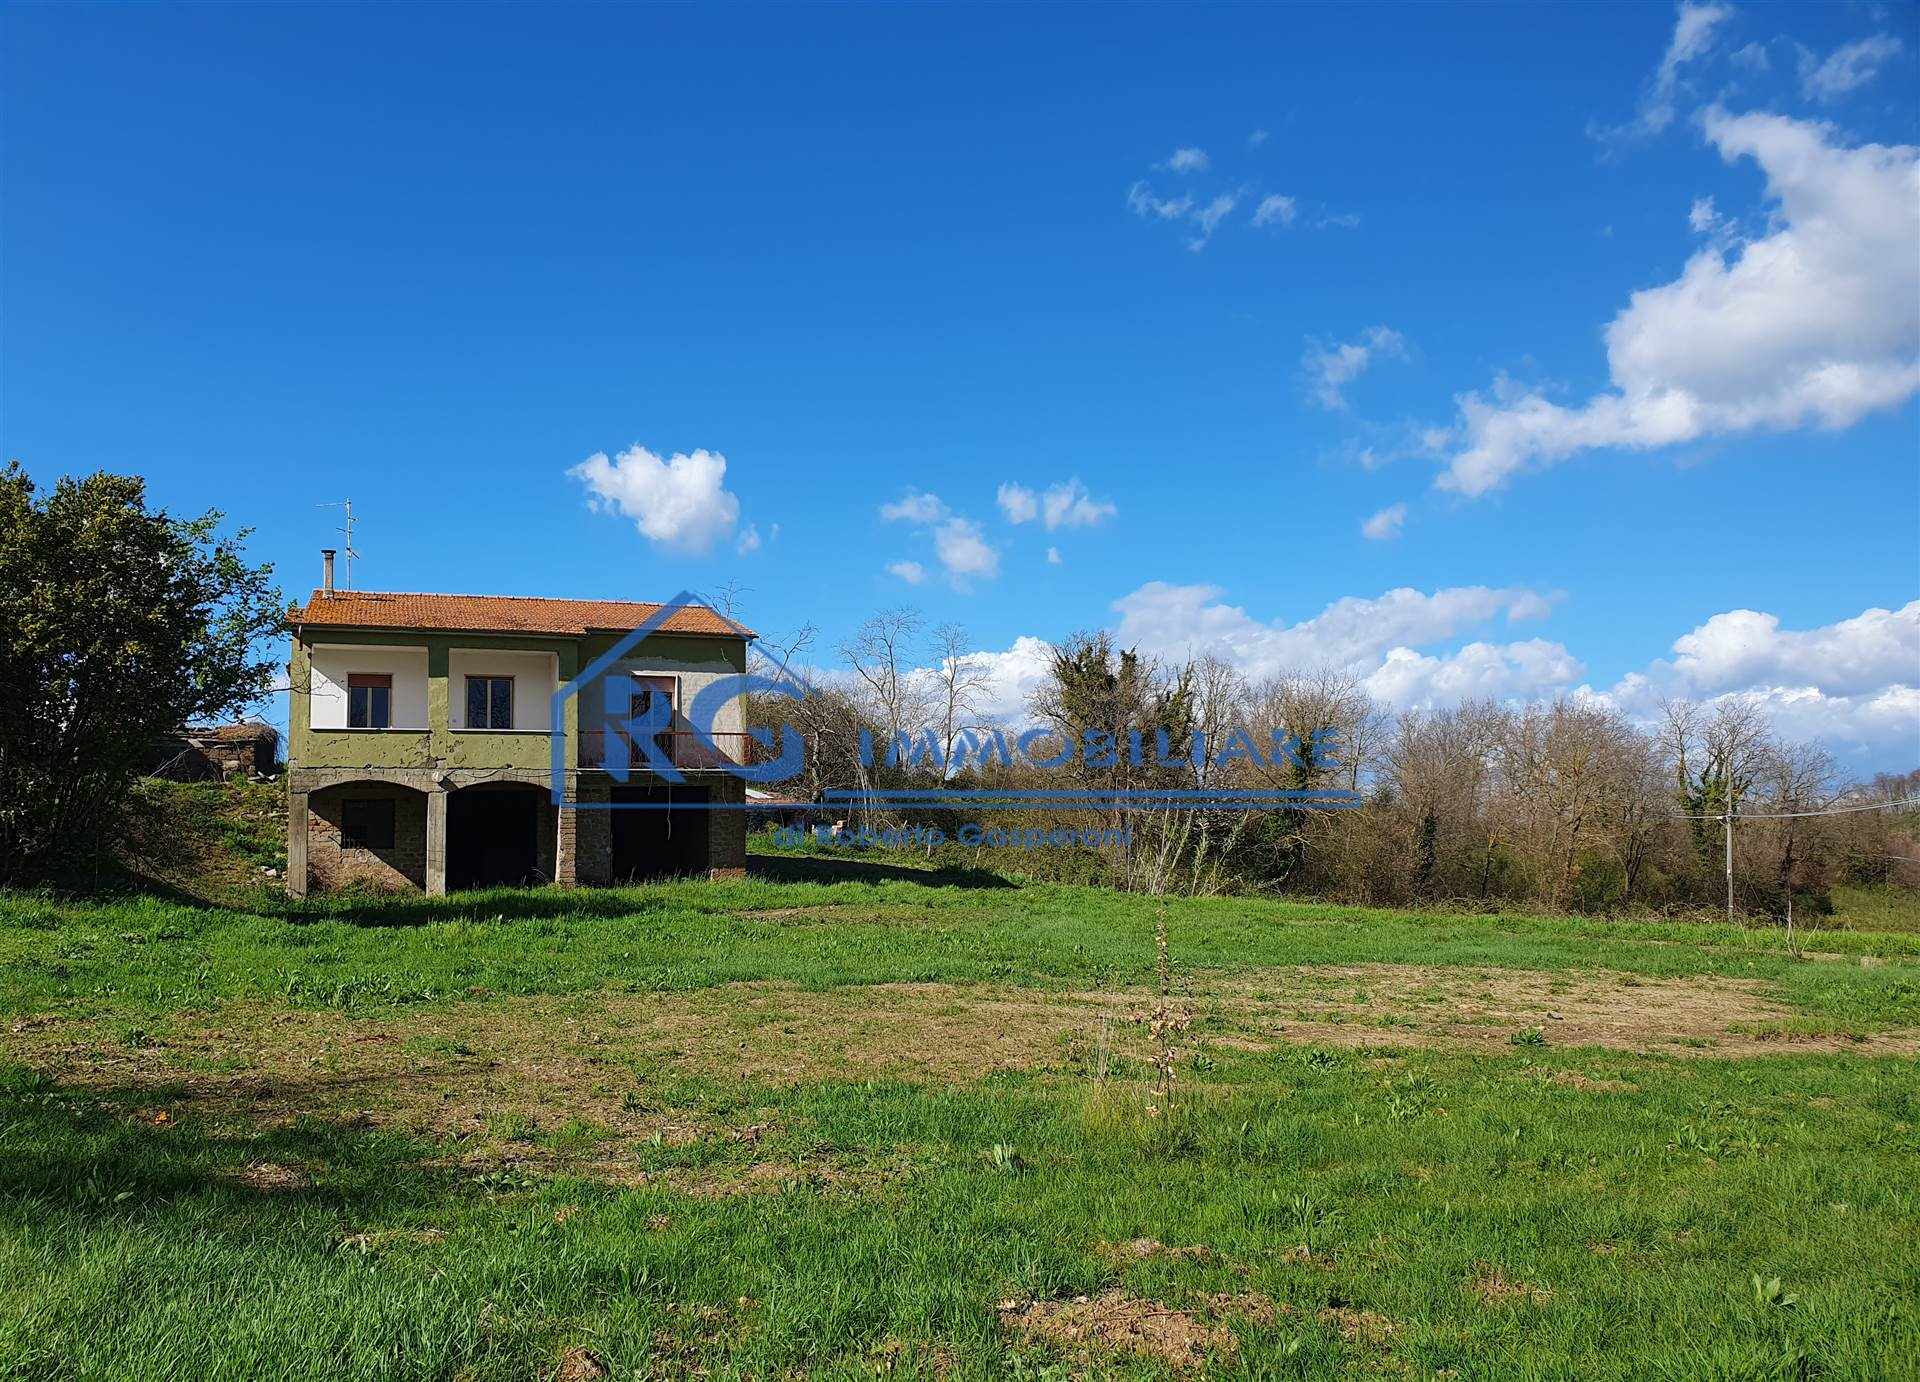 Villino in Località Monterado a Bagnoregio